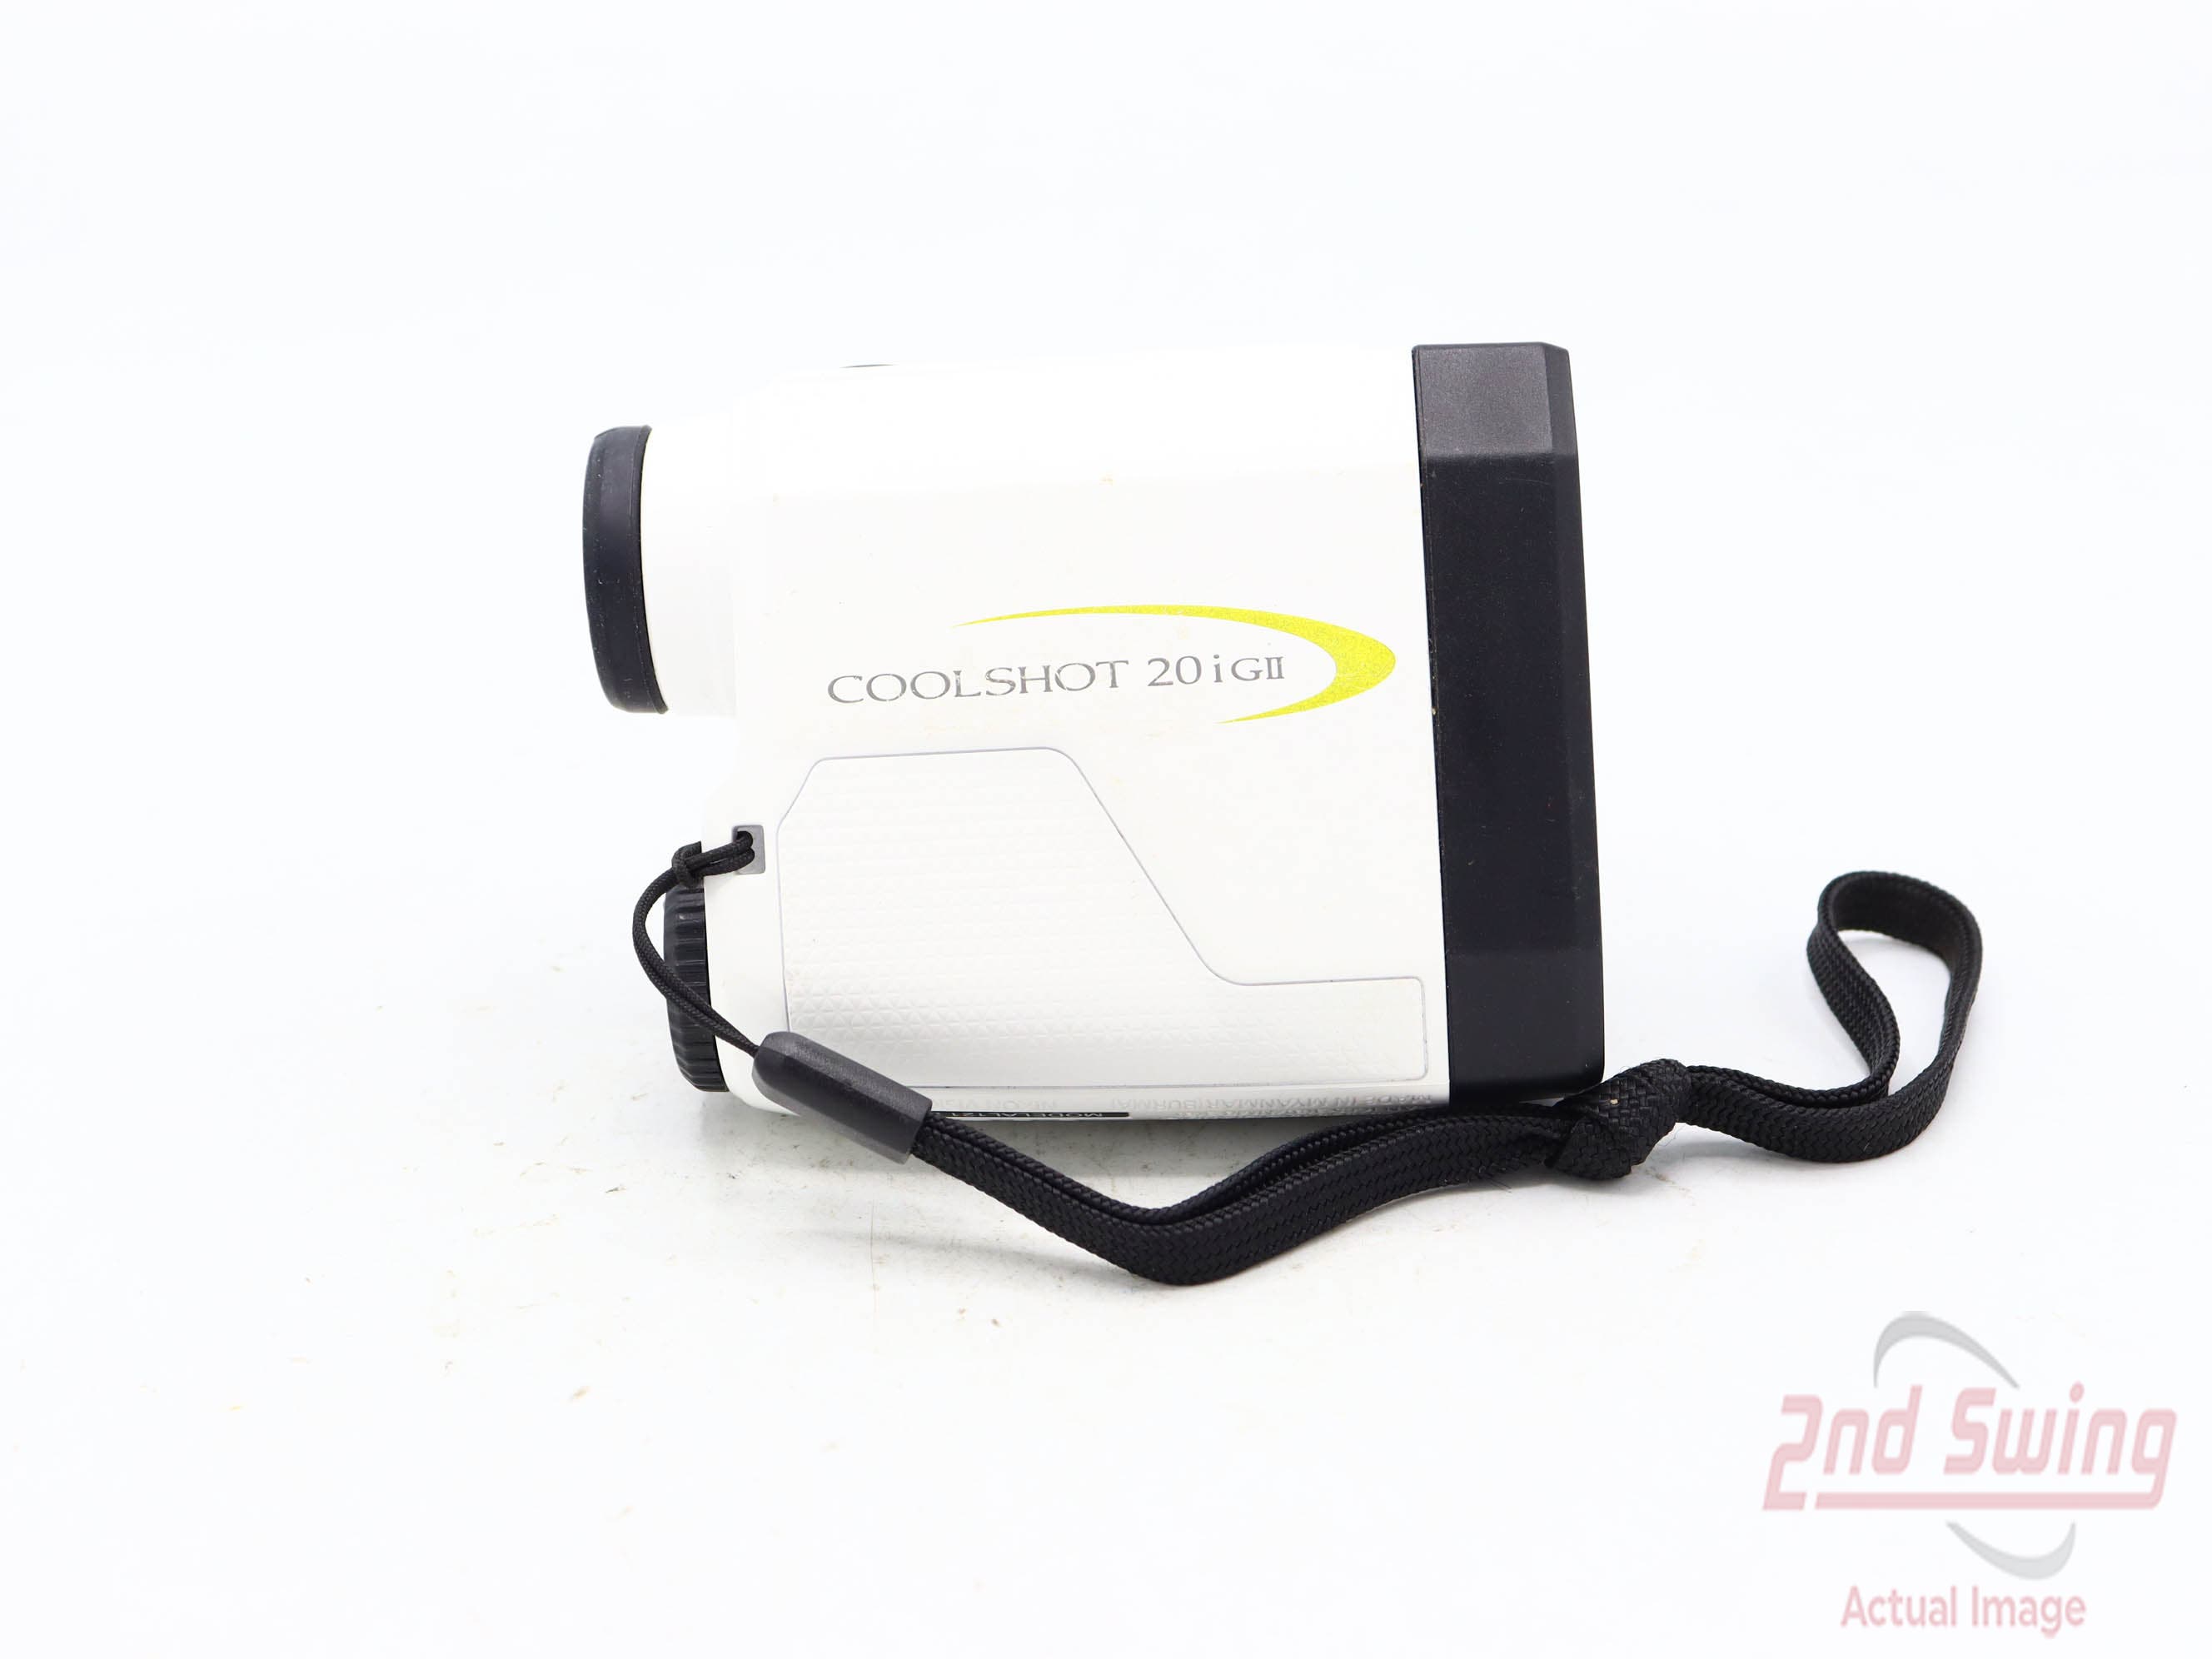 Nikon Coolshot 20i GII Golf GPS & Rangefinders (D-62331911156